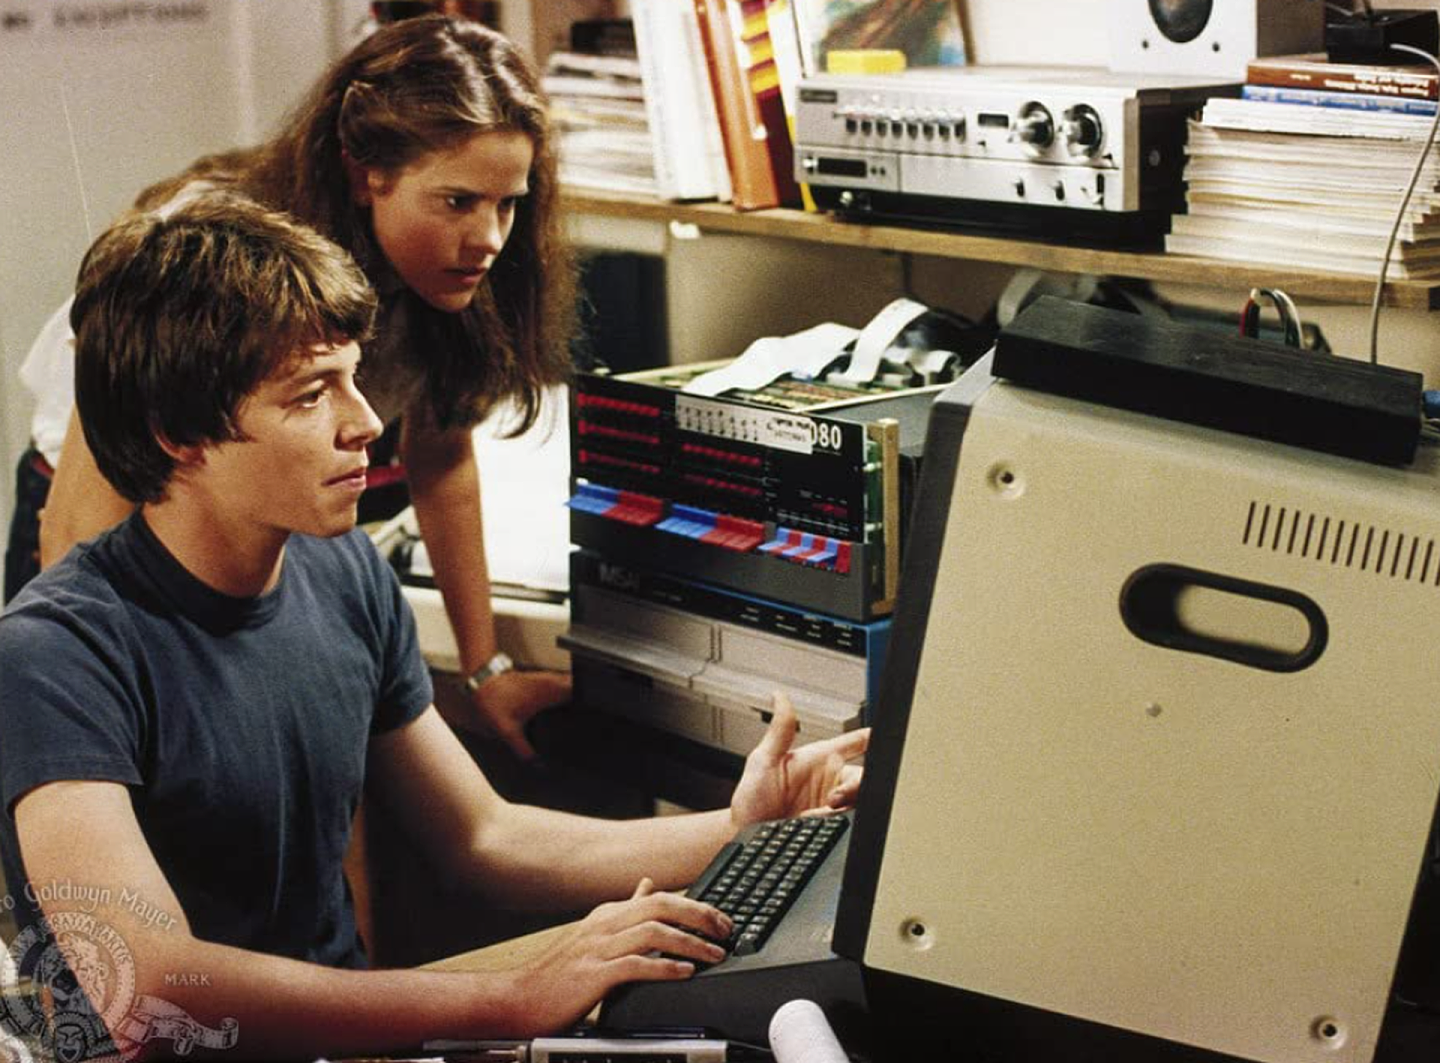 个人电脑与网际网路的发展，从1980年代肇始，此时许多影视创作，皆对科技高度发展感到忧虑，许多作品纷纷对人类与科技的未来共处感到悲观与恐惧。图为《战争游戏》中的主角使用的早期个人电脑IMSAI 8080，就轻易骇入美国国防部超级电脑中。（imdb）